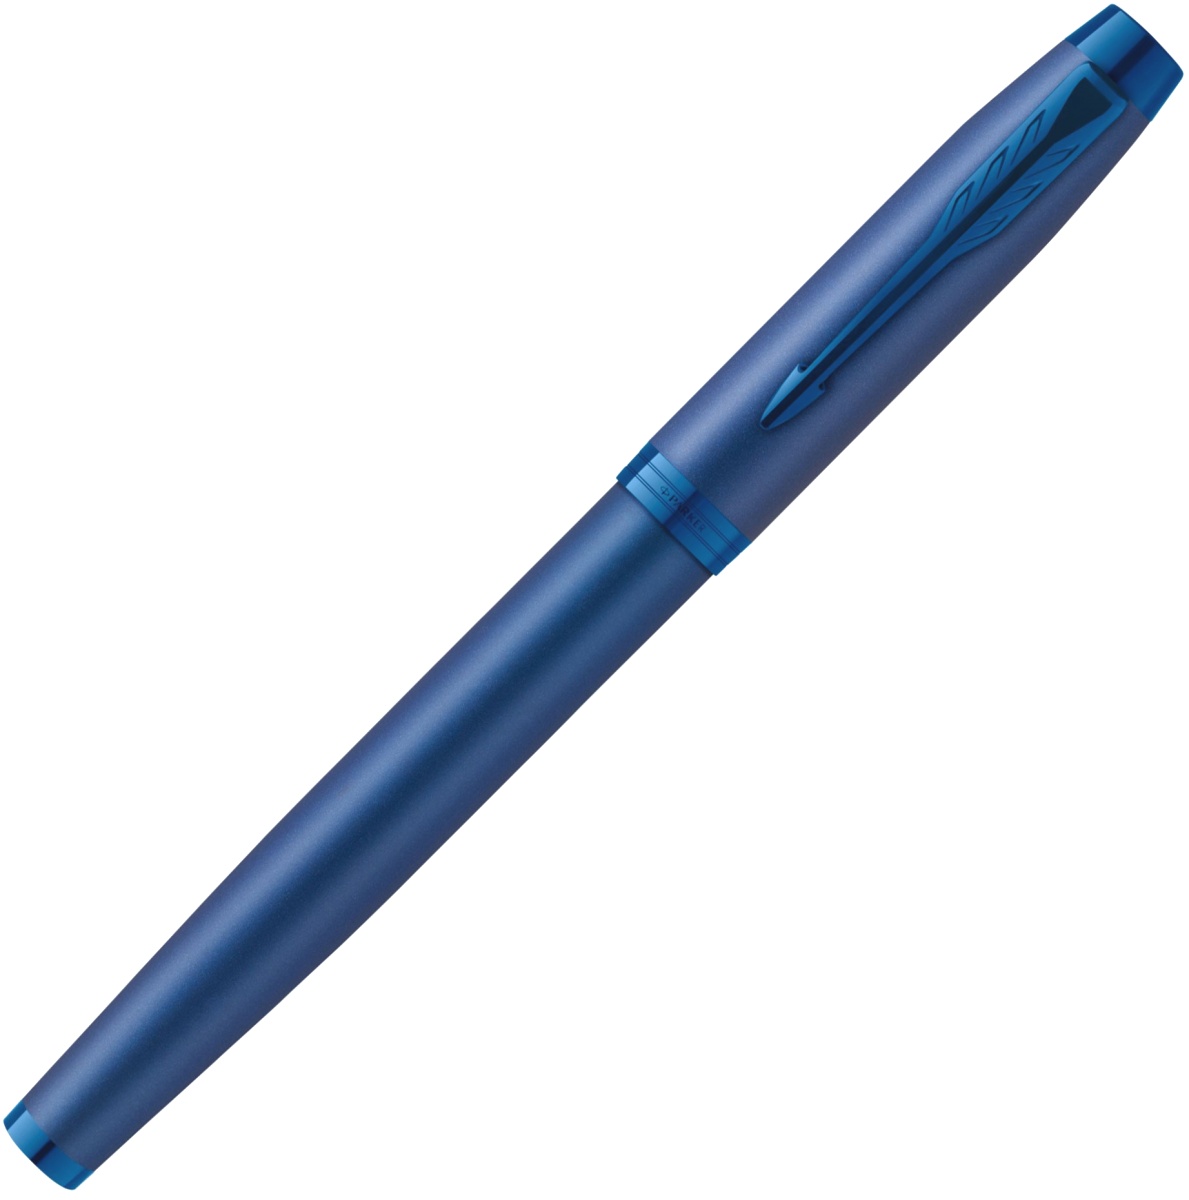  Ручка перьевая Parker IM Monochrome F328, Blue PVD (Перо F), фото 2